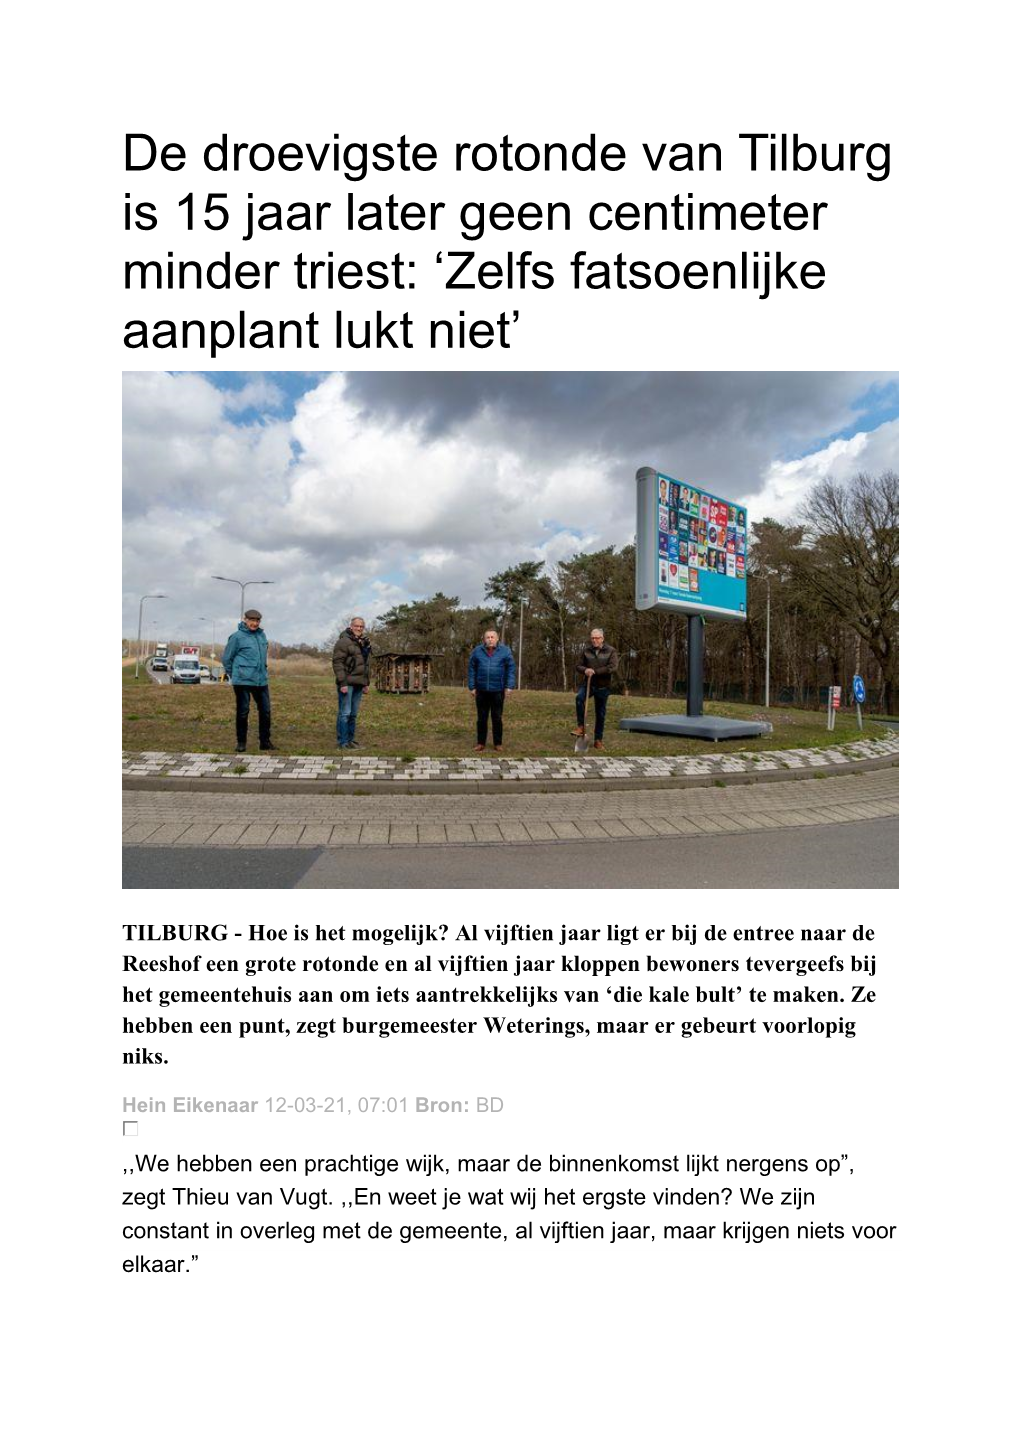 De Droevigste Rotonde Van Tilburg Is 15 Jaar Later Geen Centimeter Minder Triest: ‘Zelfs Fatsoenlijke Aanplant Lukt Niet’